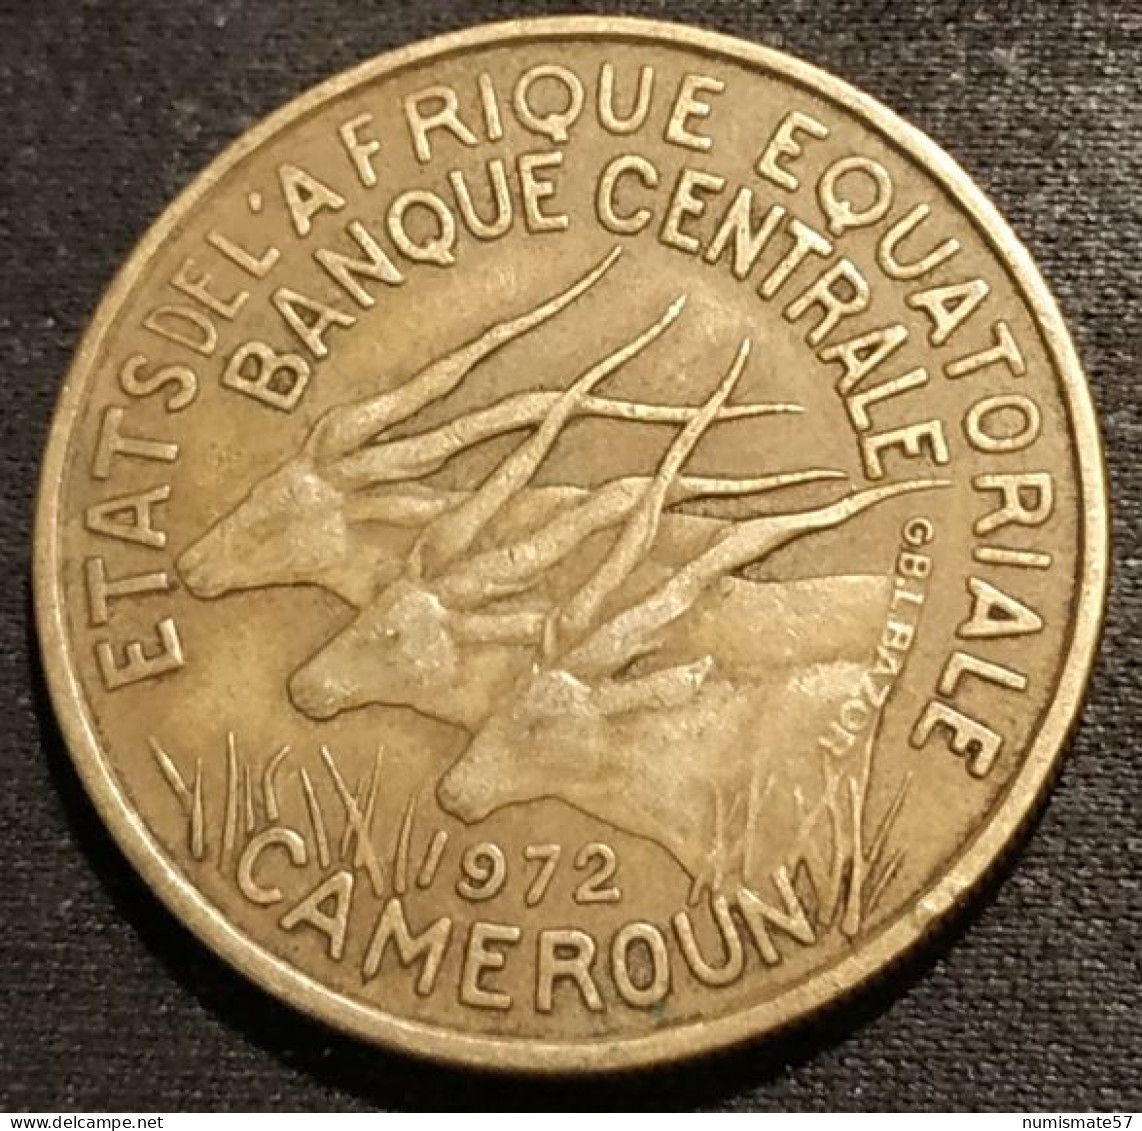 CAMEROUN - 25 FRANCS 1972 - KM 4a - ( ETATS DE L'AFRIQUE EQUATORIALE ) - Cameroun